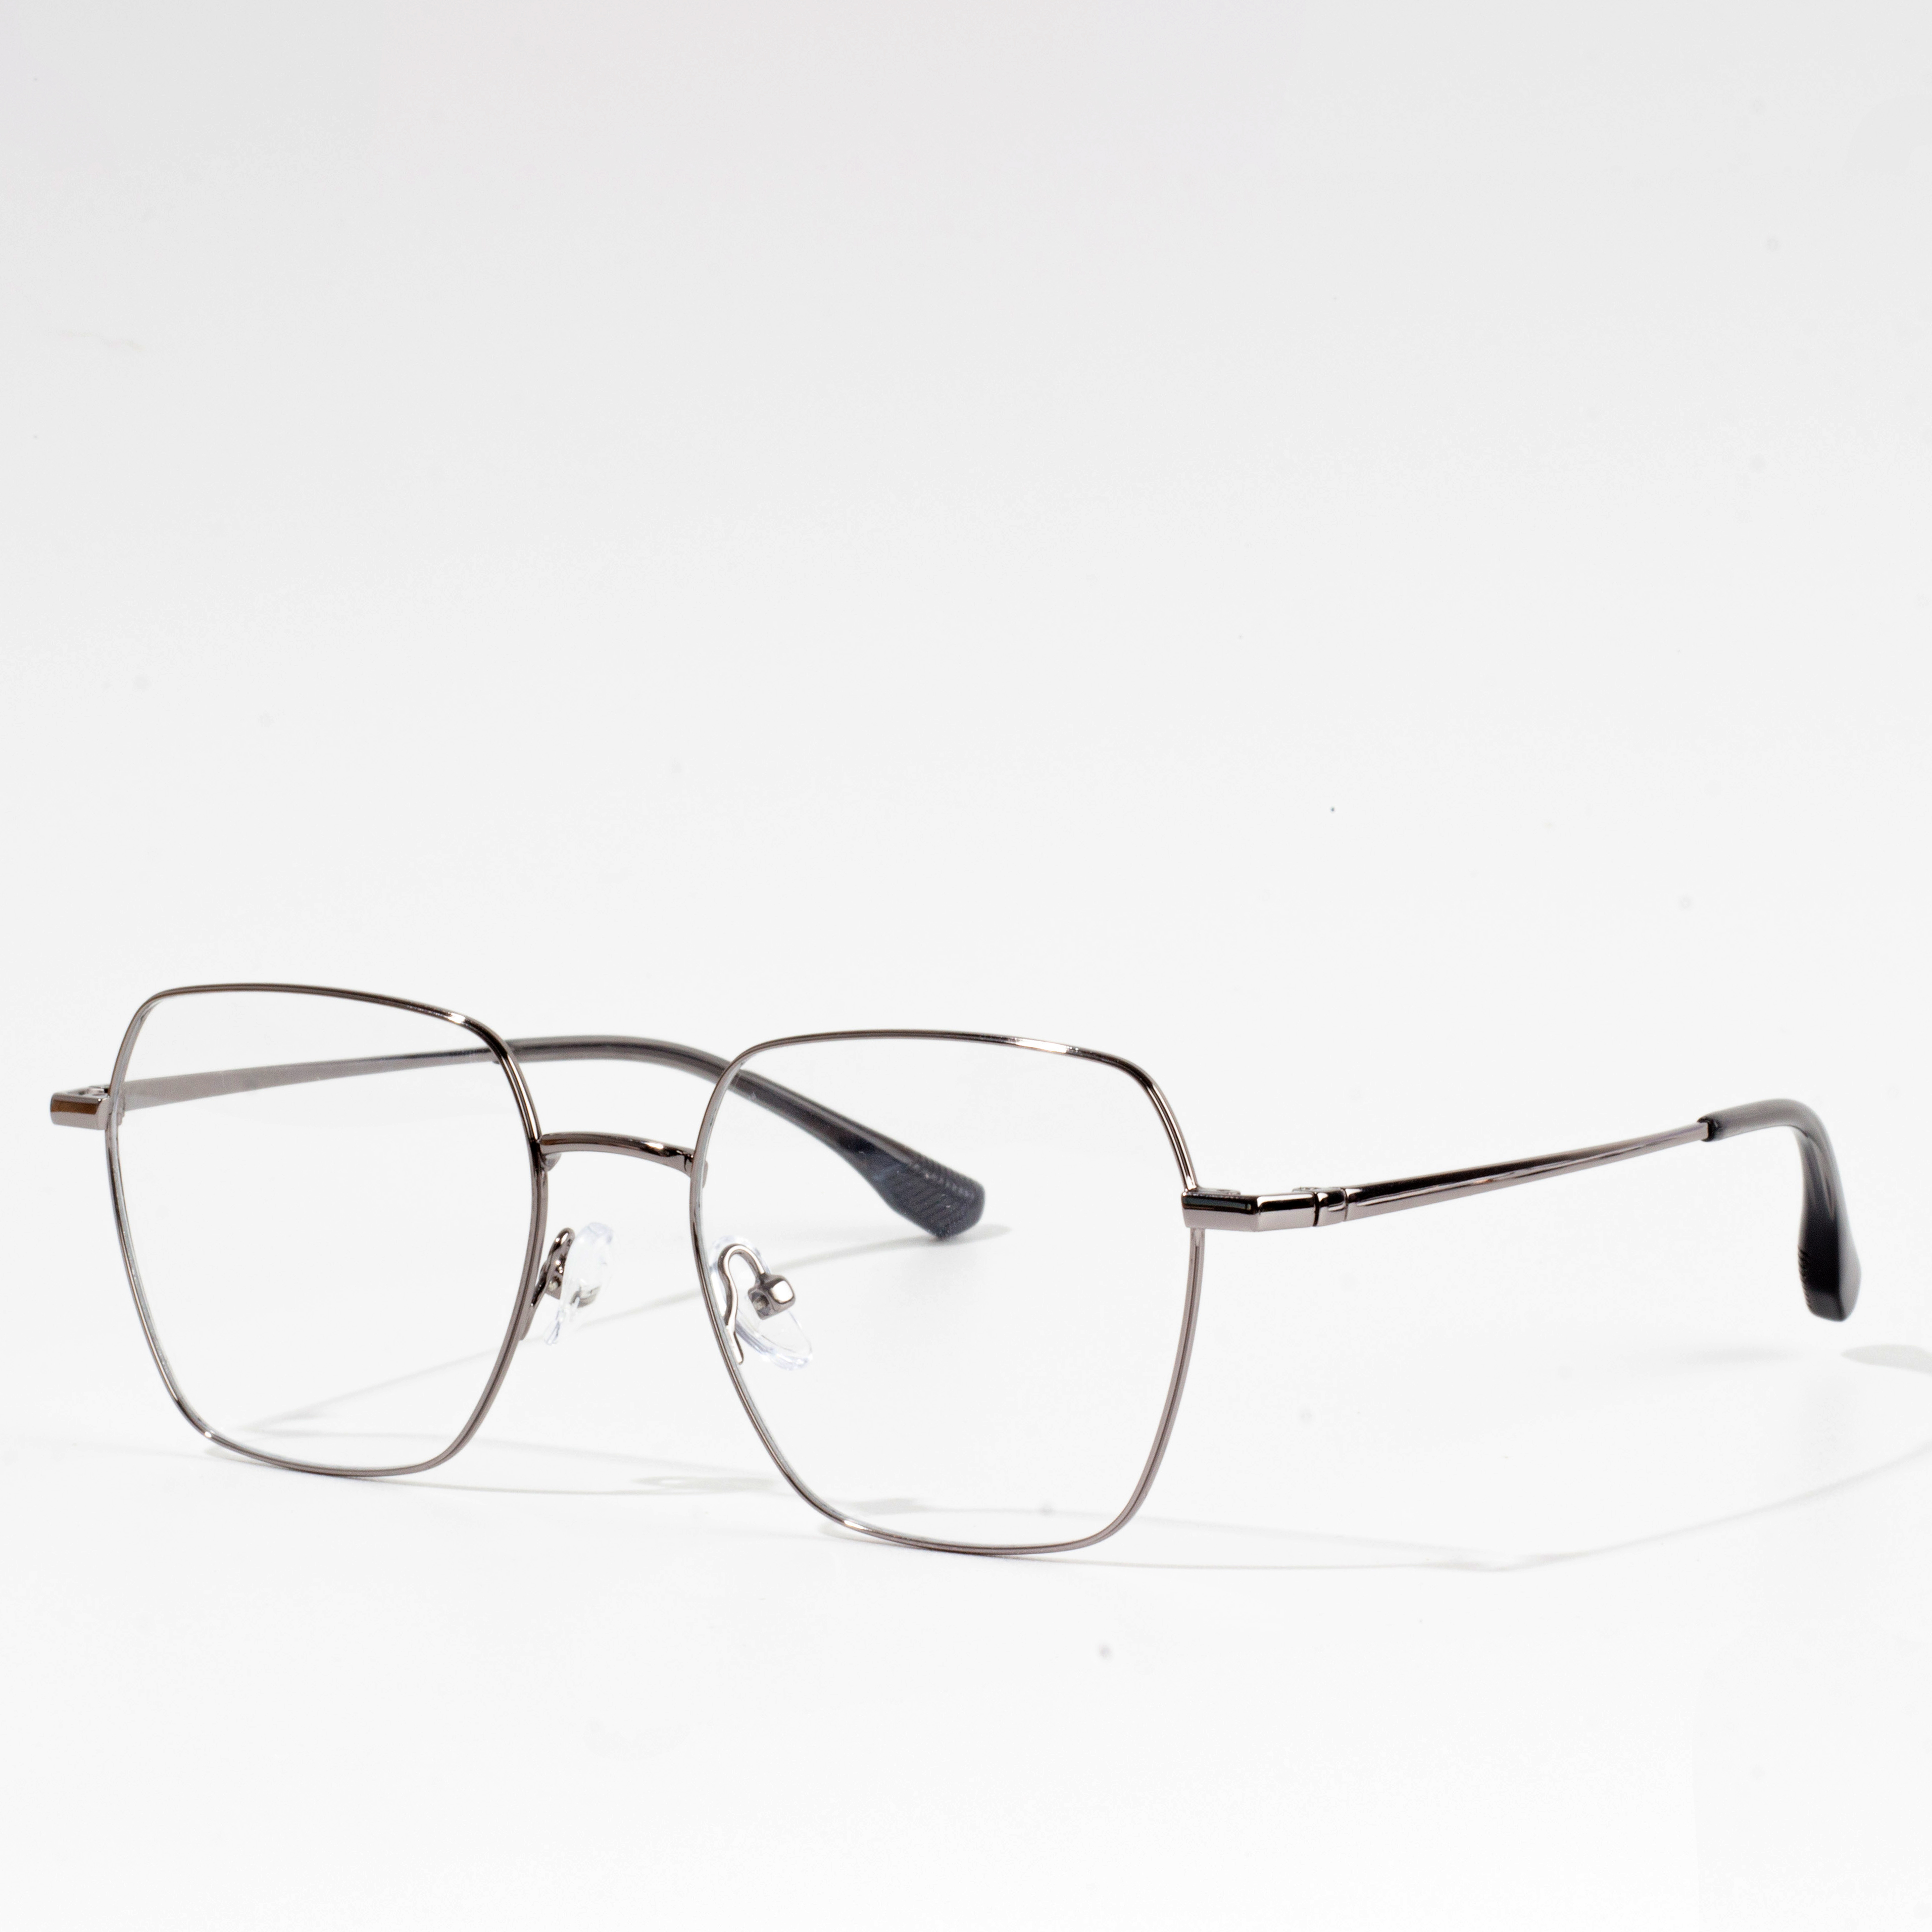 occhiali da vista in metallo sottili e leggeri